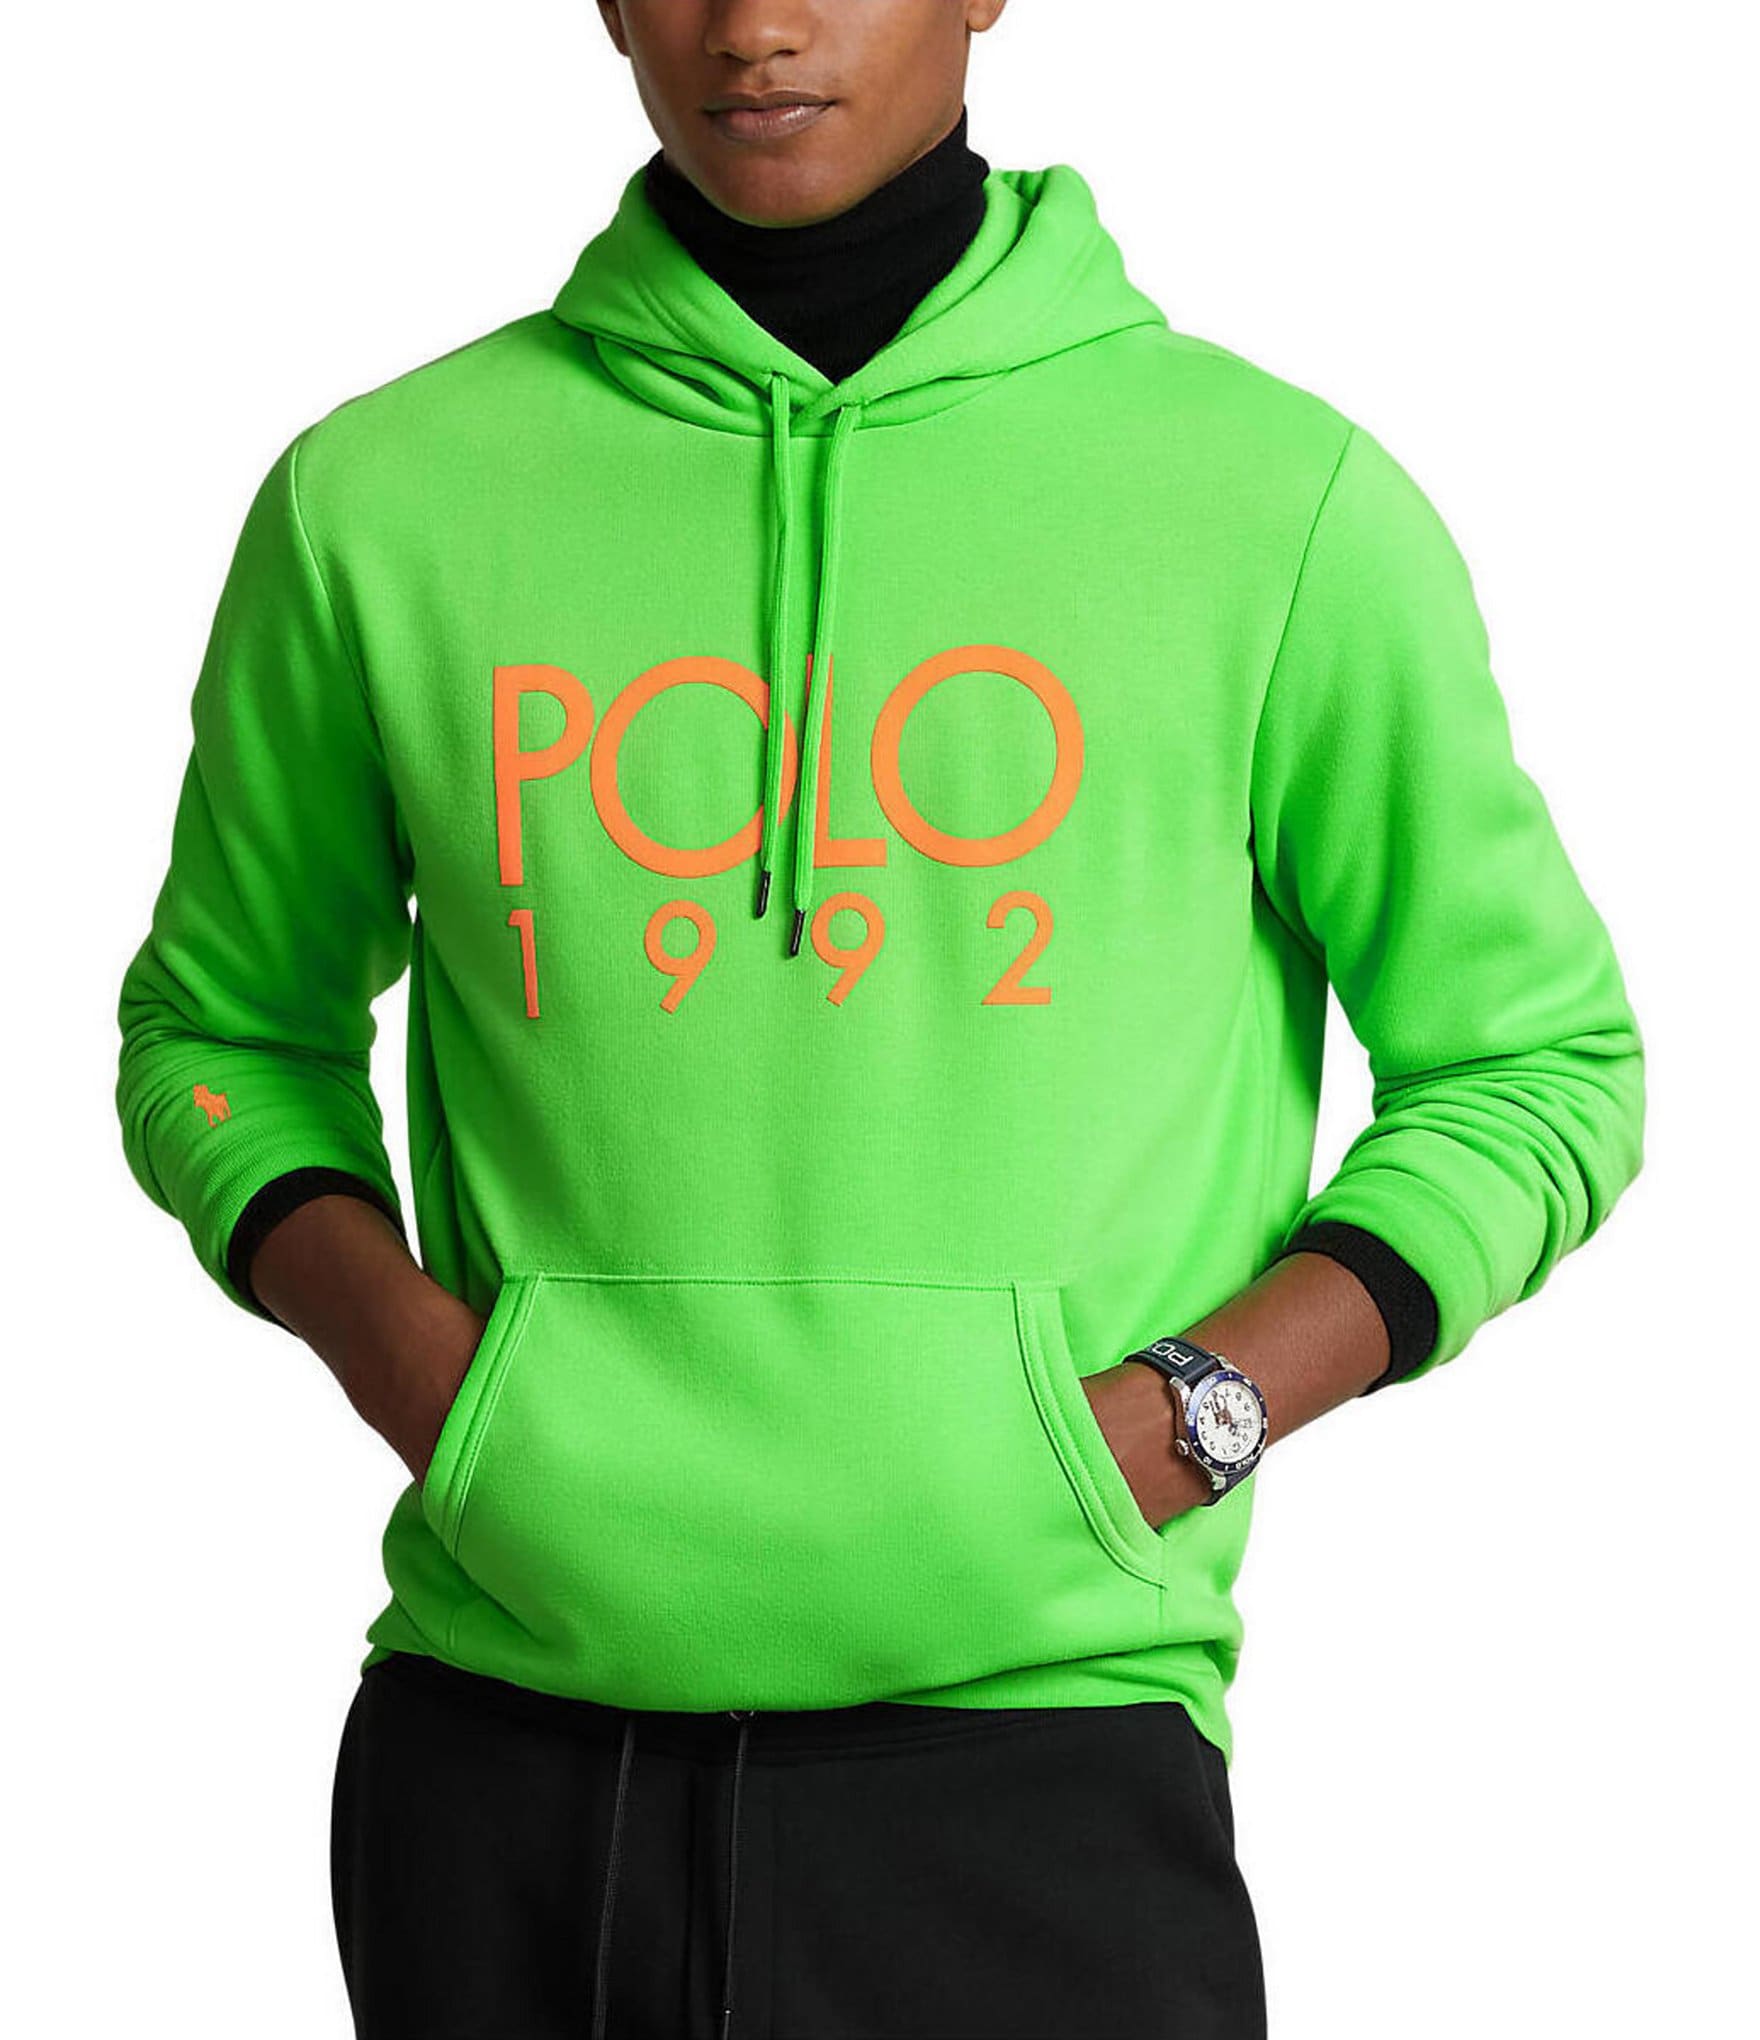 Polo Ralph Lauren Men's Olive Green Sweatshirt Hoodie Men's Sz 3XB NWT   Olive green sweatshirt, Sweatshirts hoodie mens, Polo ralph lauren mens